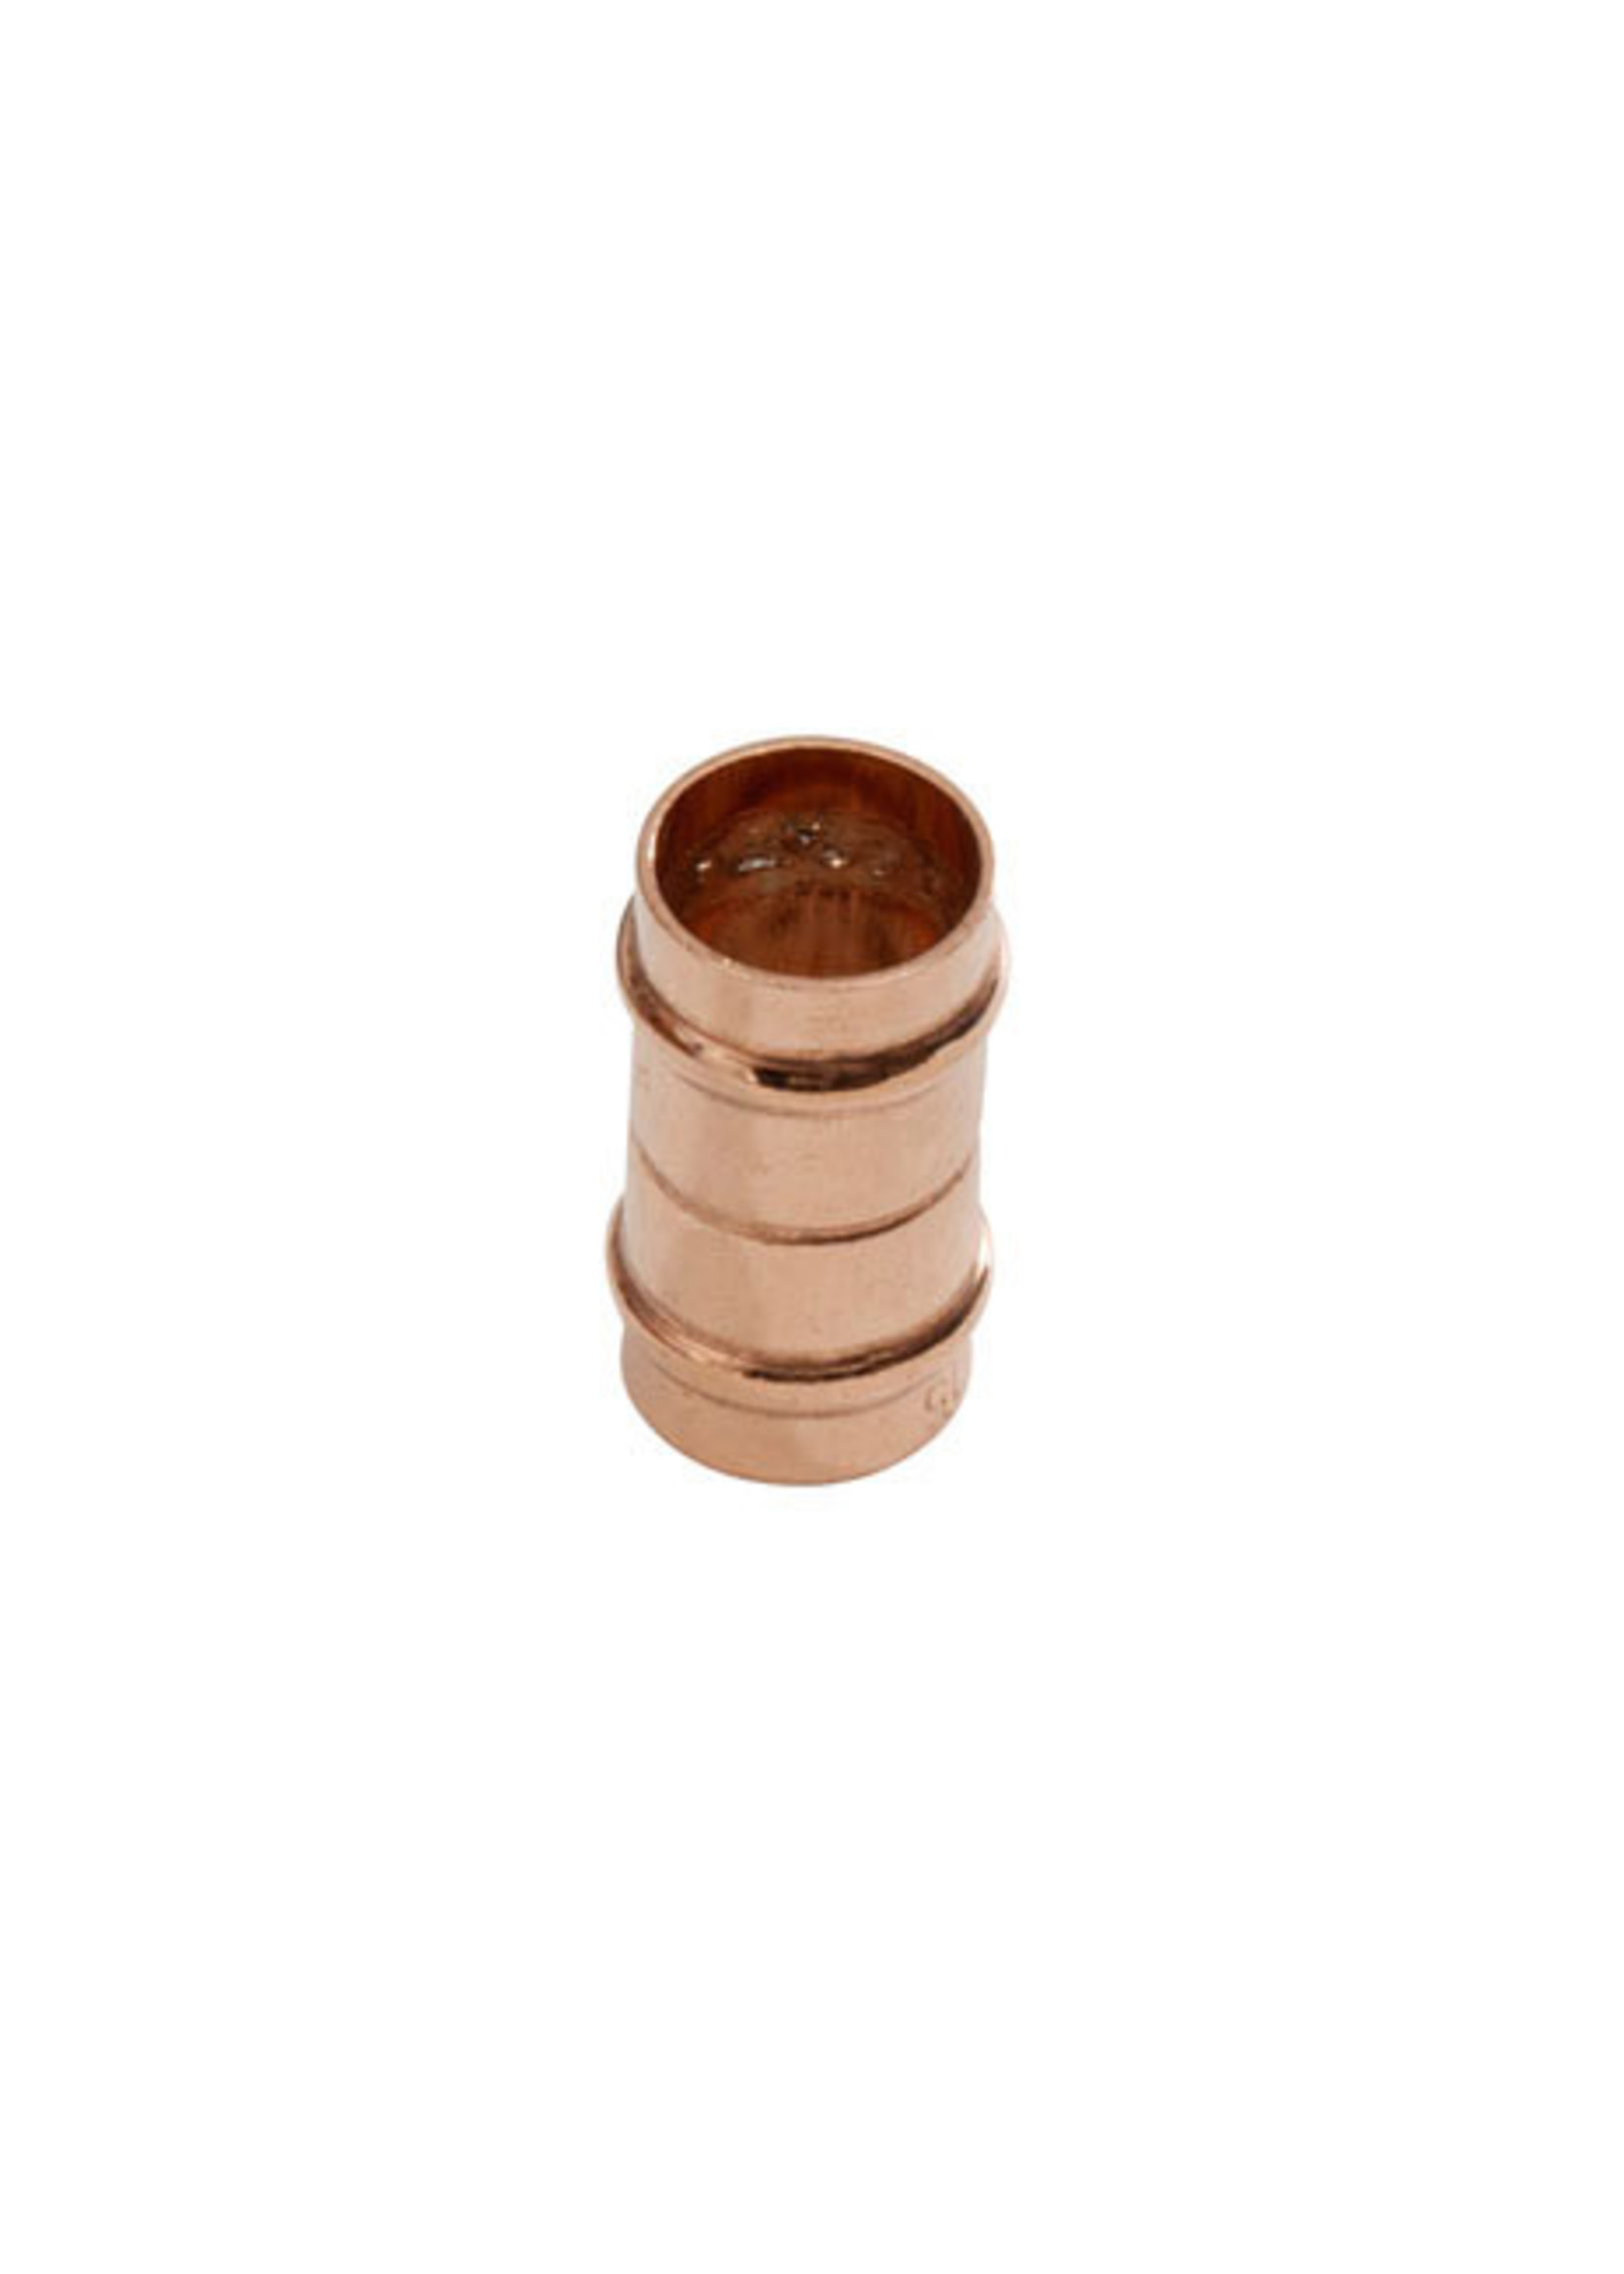 Securplumb SR1 Solder Ring Coupler 15mm Copper